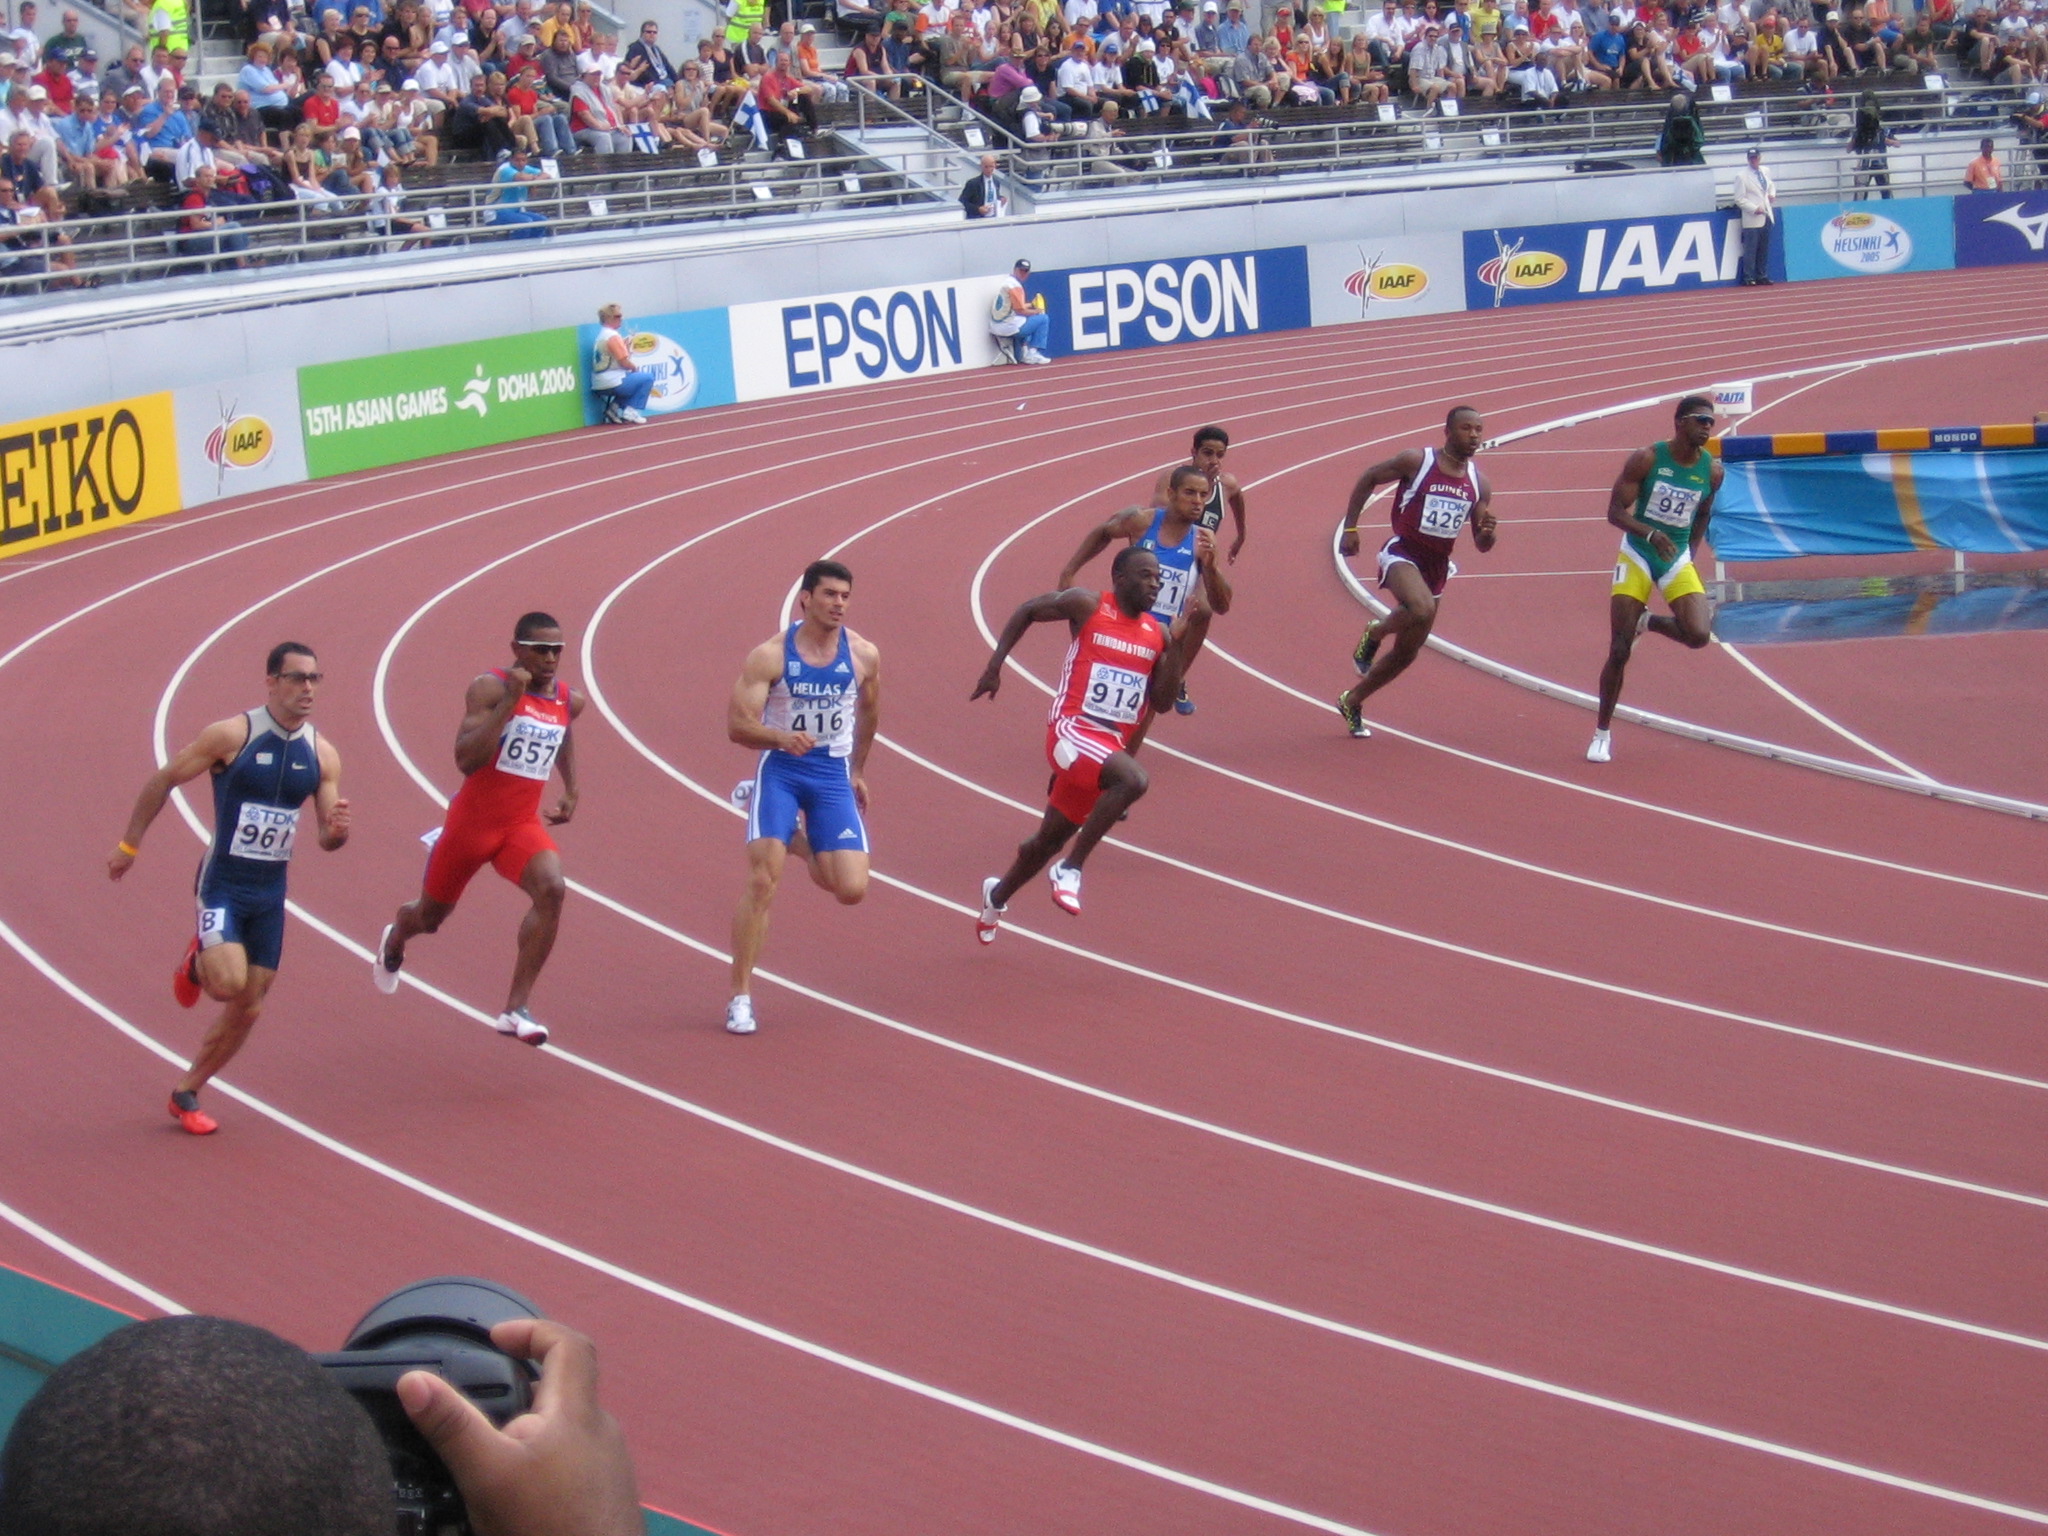 Спринт это бег на стадионе. Легкая атлетика дистанции бега 200 метров. Легкая атлетика бег спринт. Лёгкая атлетика дистанции короткие спринт. Спринтерский бег спринт.